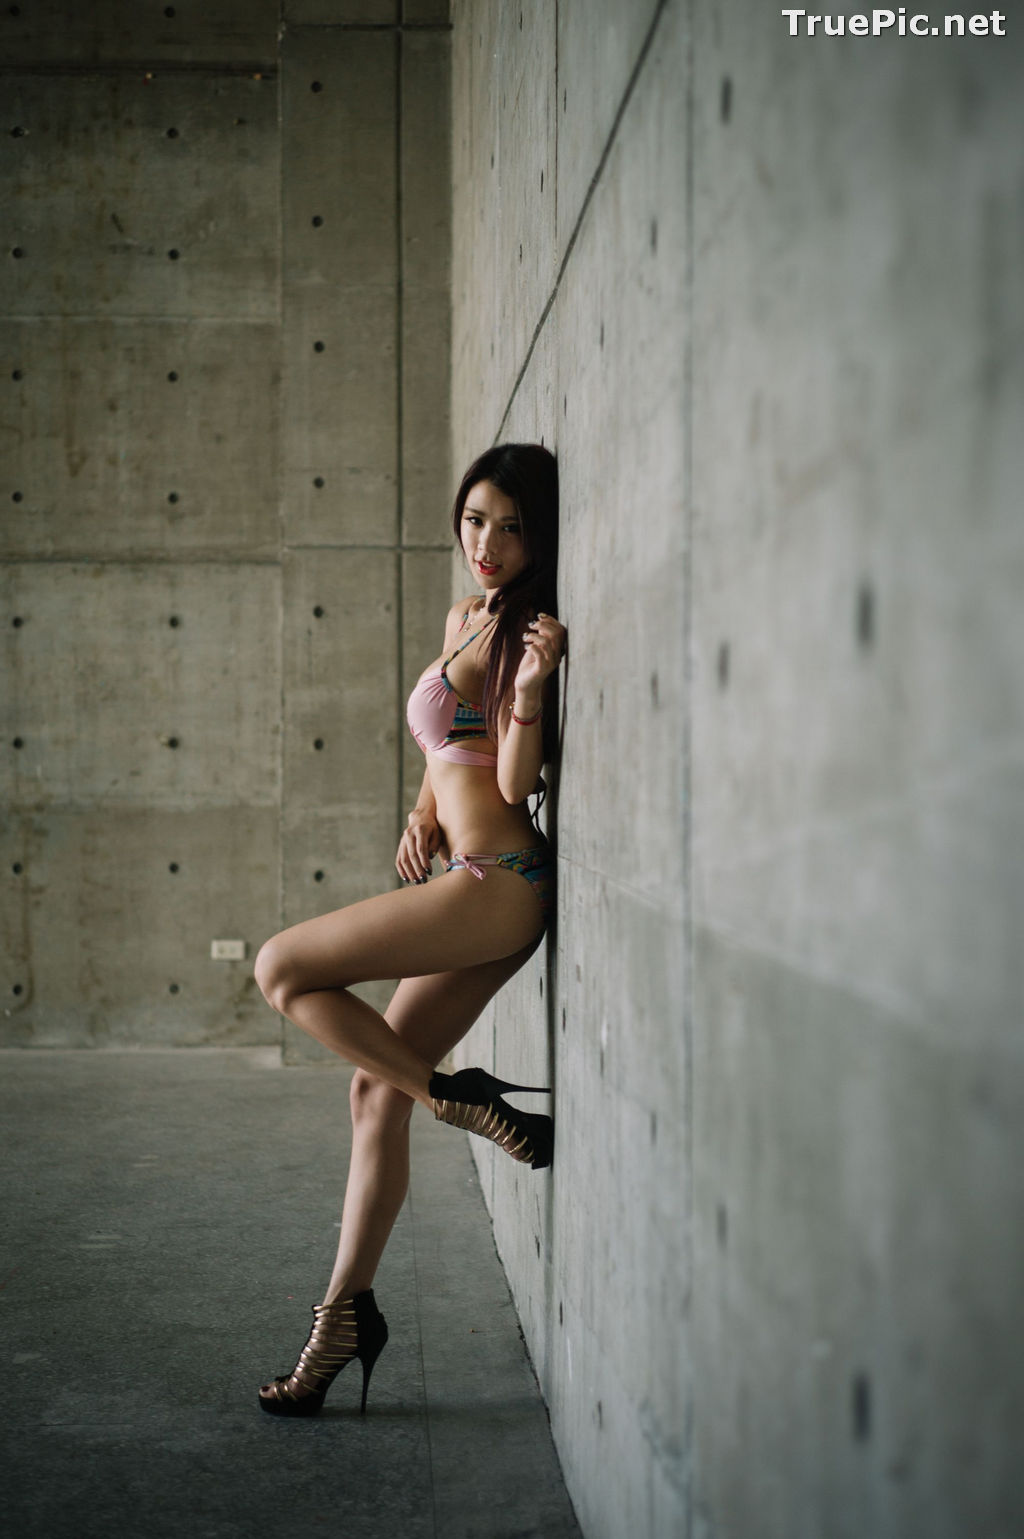 Image Taiwanese Model - 魏曼曼 (Amanda) - Bikini In The Room - TruePic.net - Picture-58